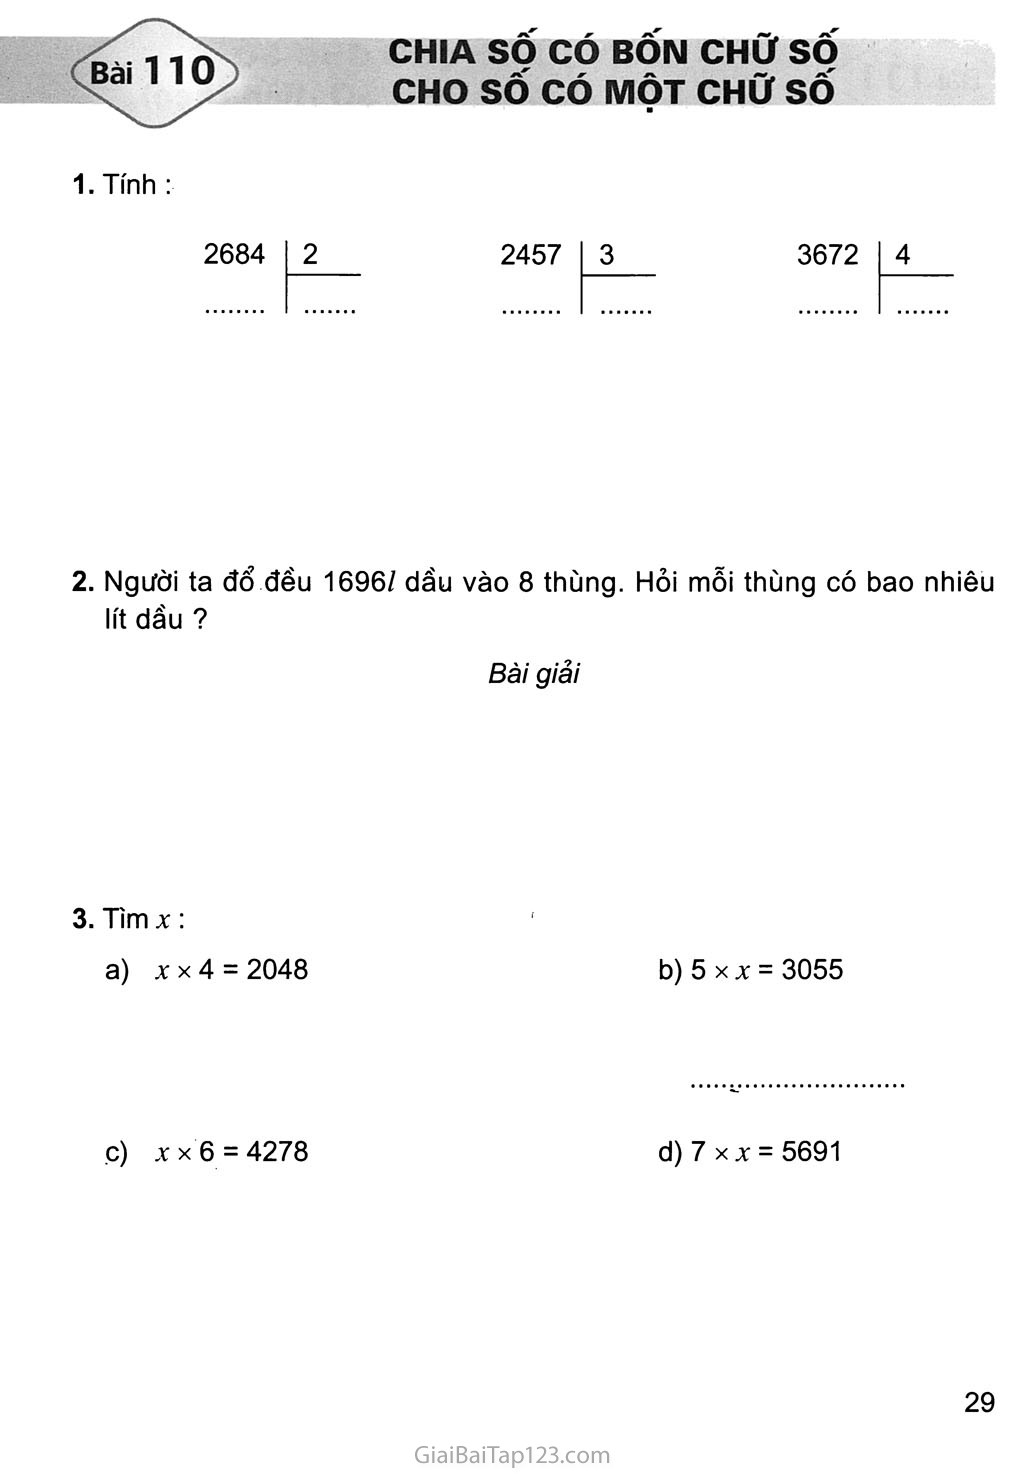 Bài 110: Chia số có bốn chữ số với số có một chữ số trang 1